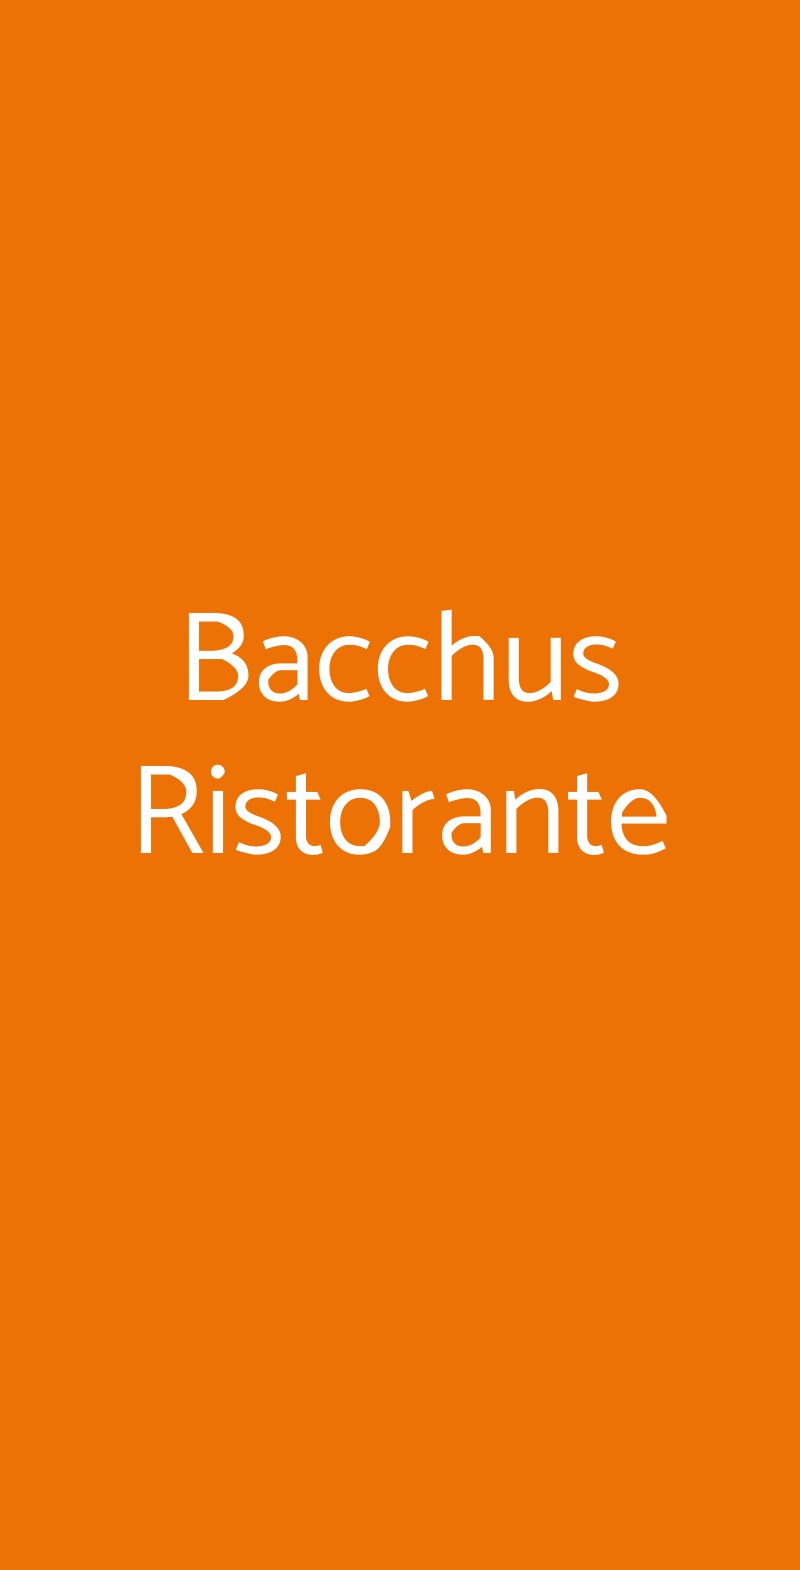 Bacchus Ristorante Olbia menù 1 pagina